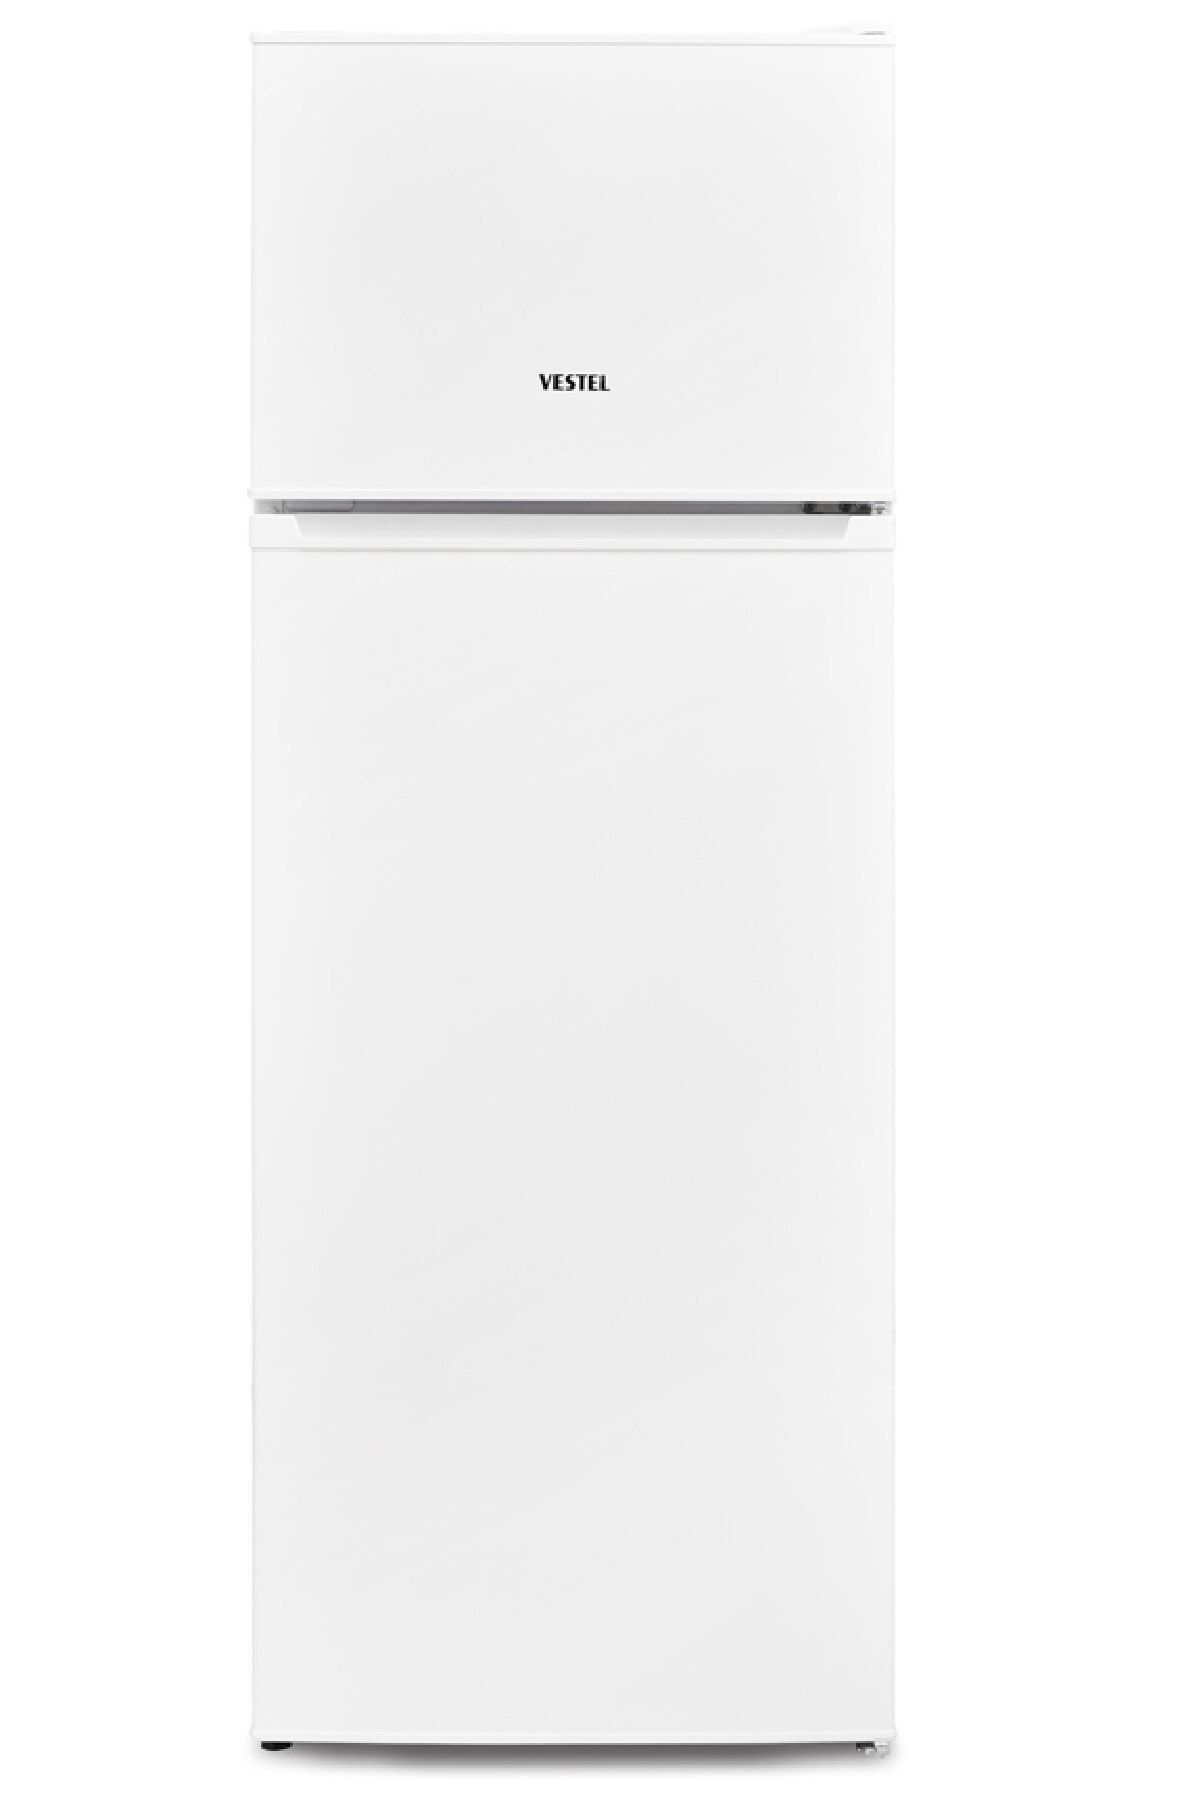 VESTEL Buzdolabı Eko Sc 25001